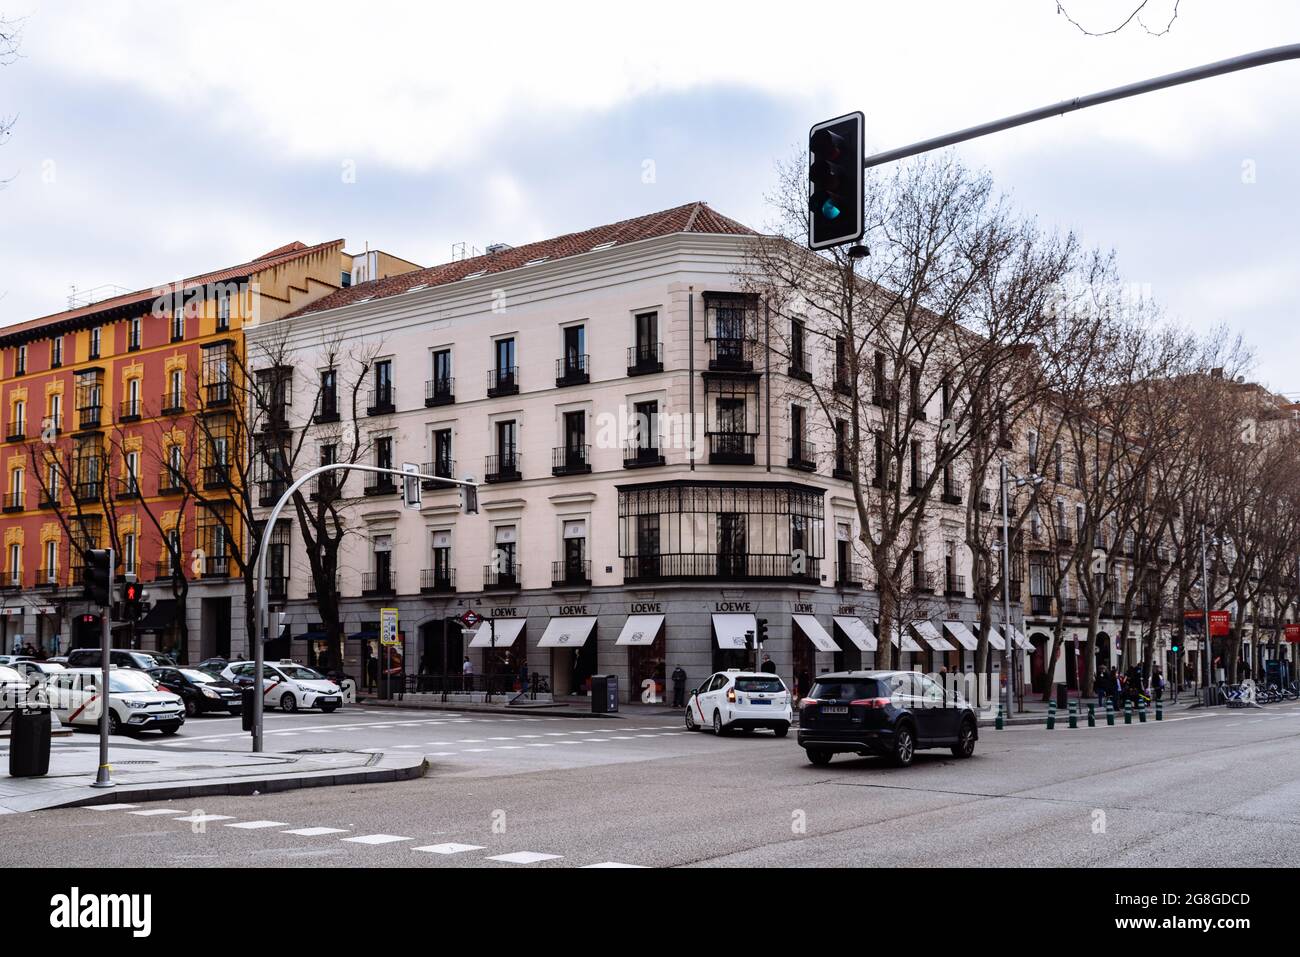 Madrid, España - 7 de marzo de 2021: Calle Serrano en el barrio de Salamanca Un día nublado. Tienda de moda Loewe. Salamanca es bien conocida por ser uno nosotros Fotografía